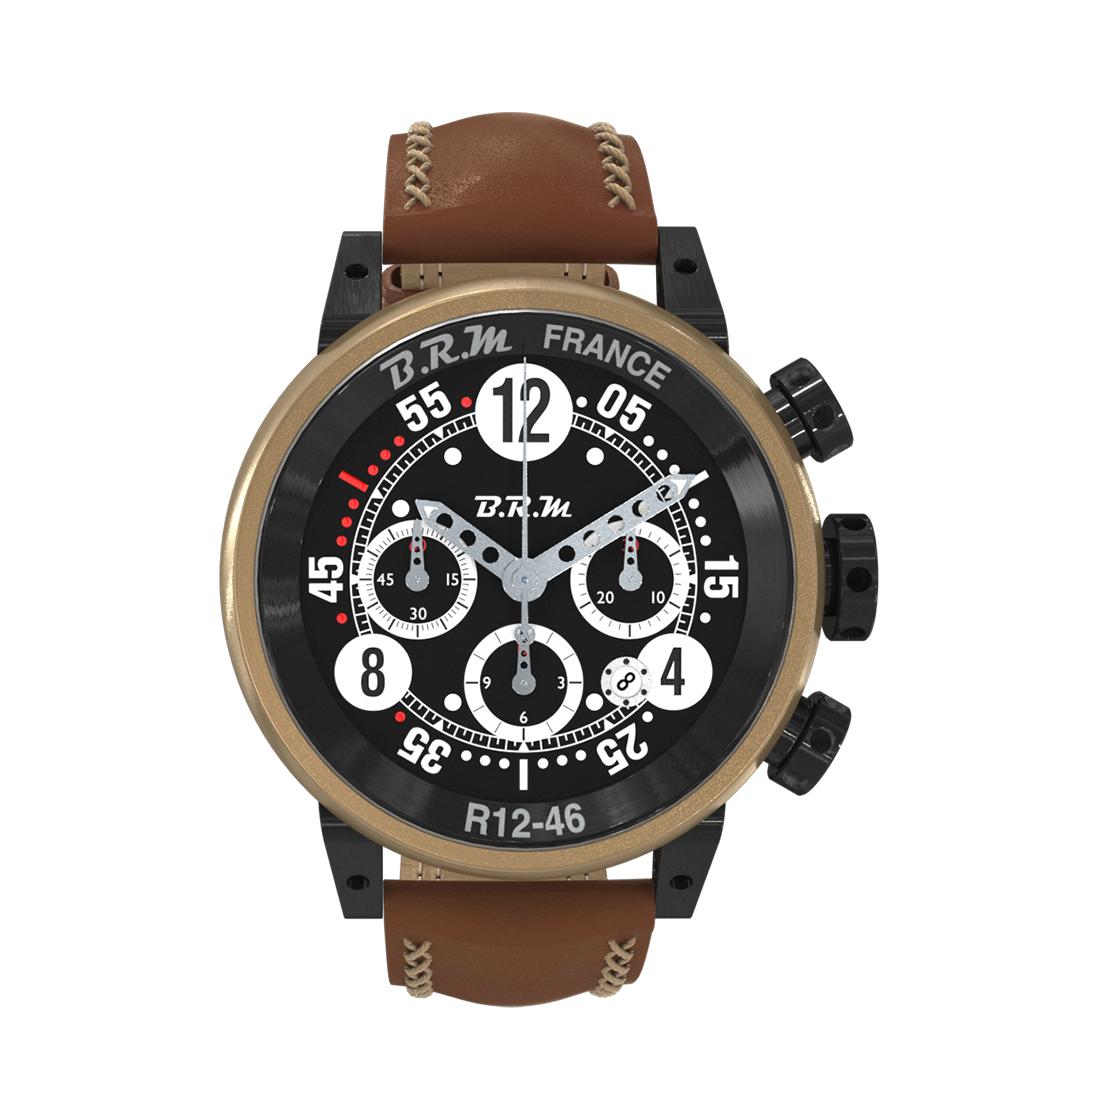 Ce chronographe R12-46-AG avec boîtier en bronze et cornes, poussoirs et couronne en PVD noir est le garde-temps indispensable pour compléter votre look sport chic cet automne.
Le boîtier de 46 mm de diamètre et le bracelet en cuir naturel avec